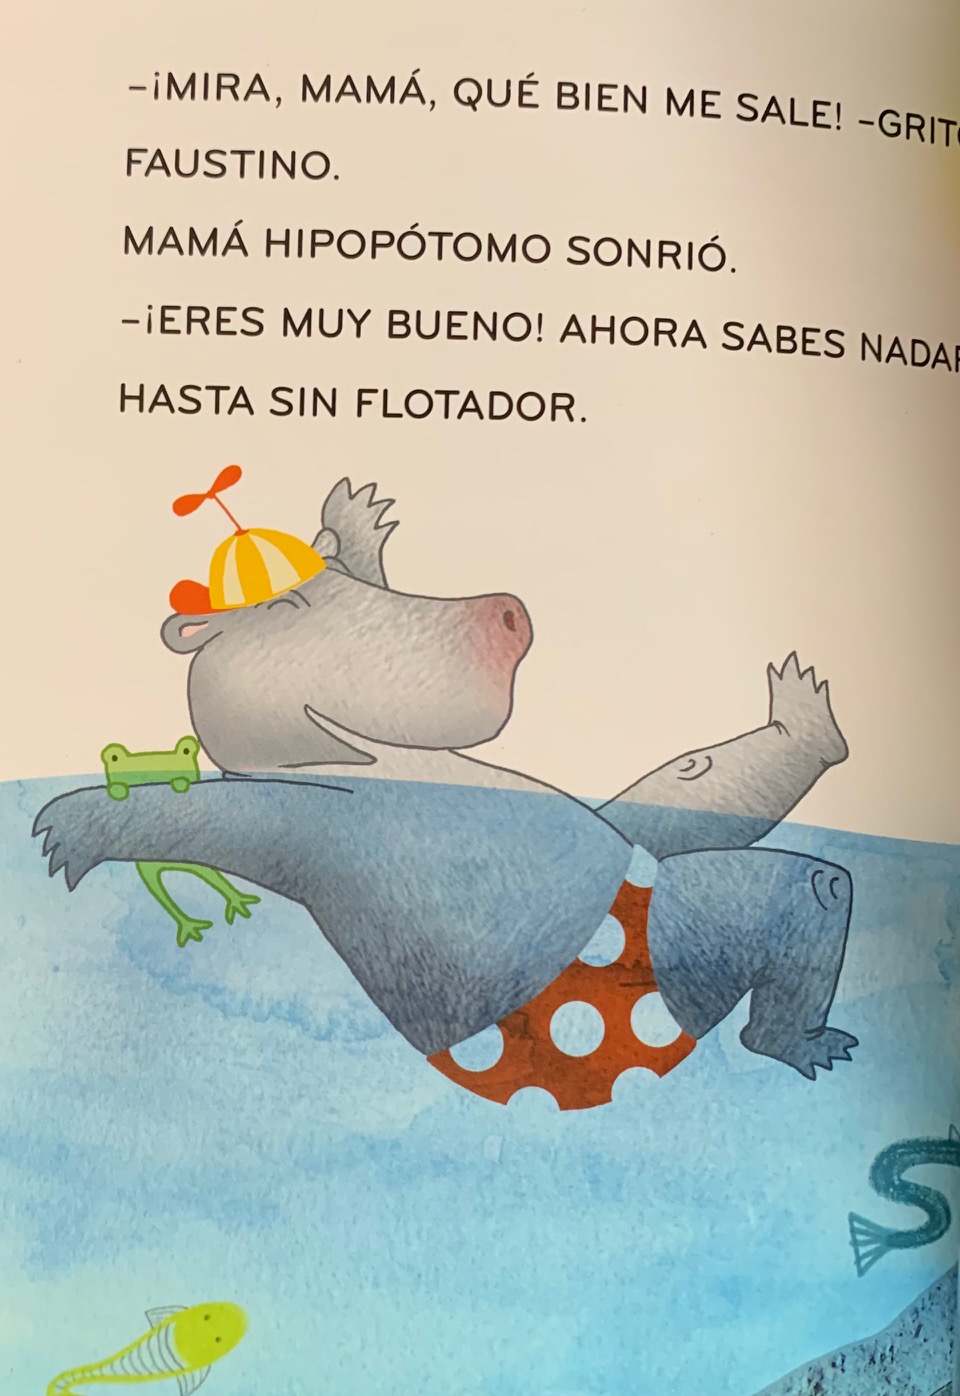 El hipopotamo aprende a nadar